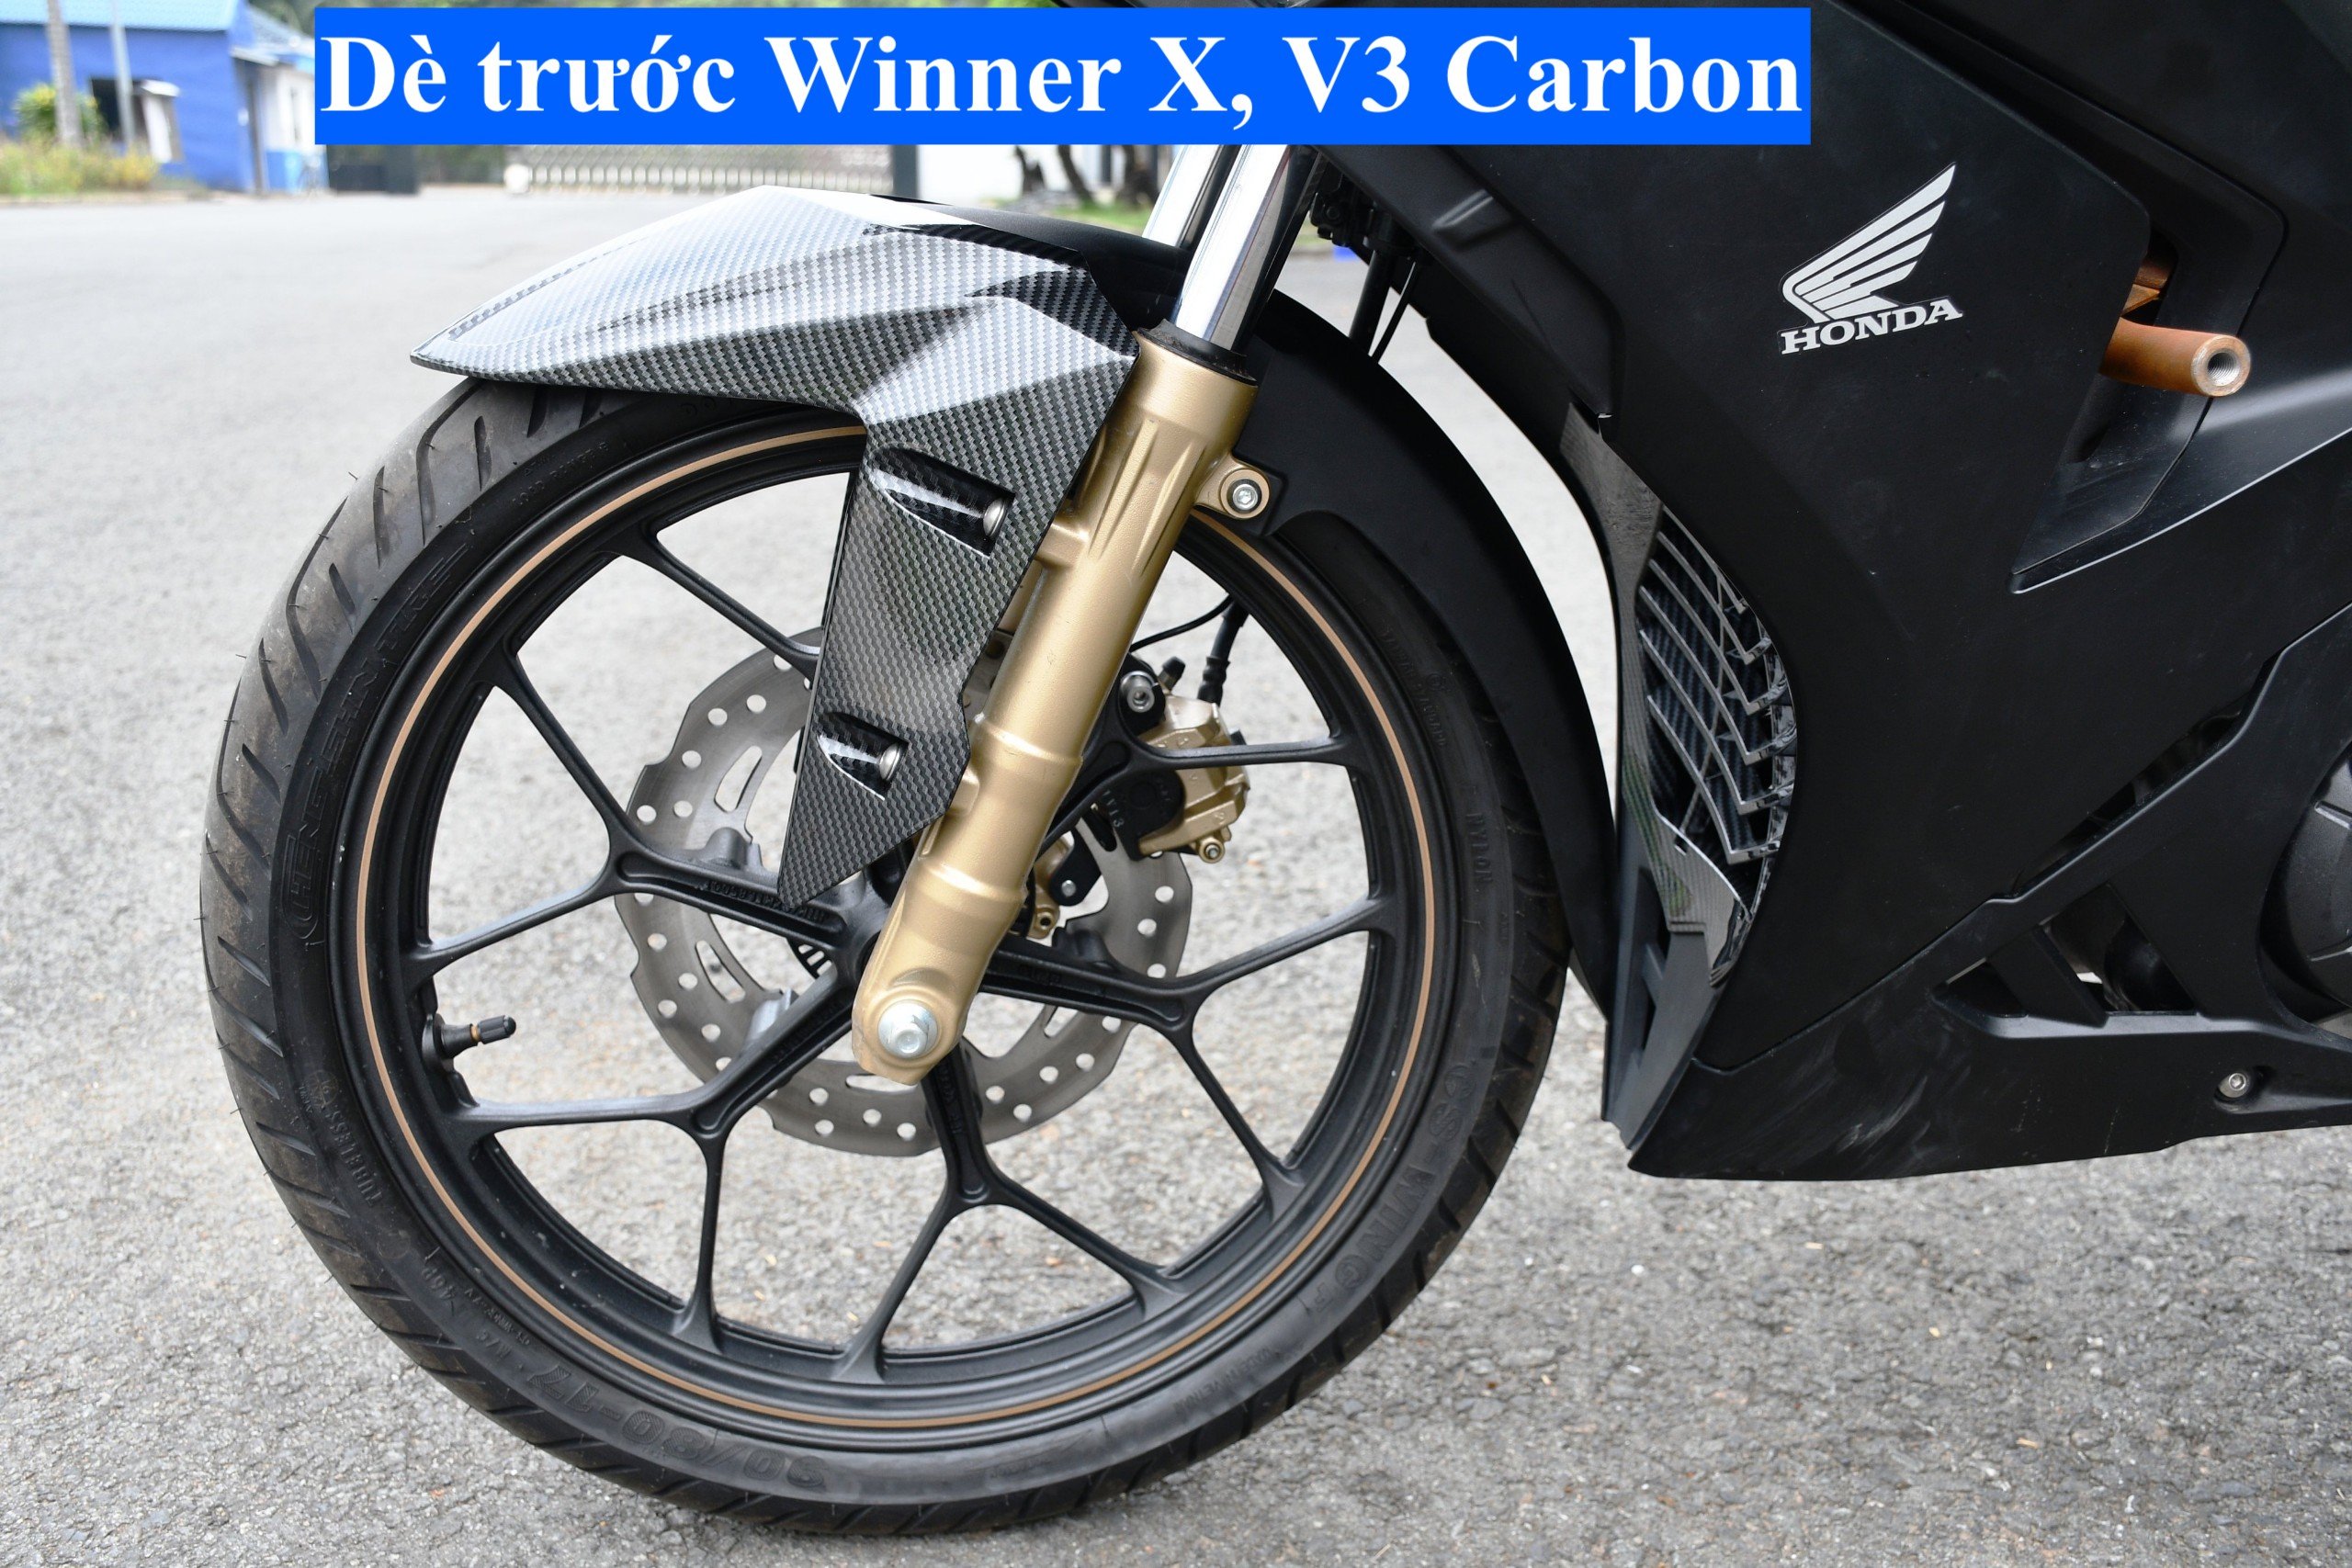 Dè trước dành cho Winner X, V3 Carbon